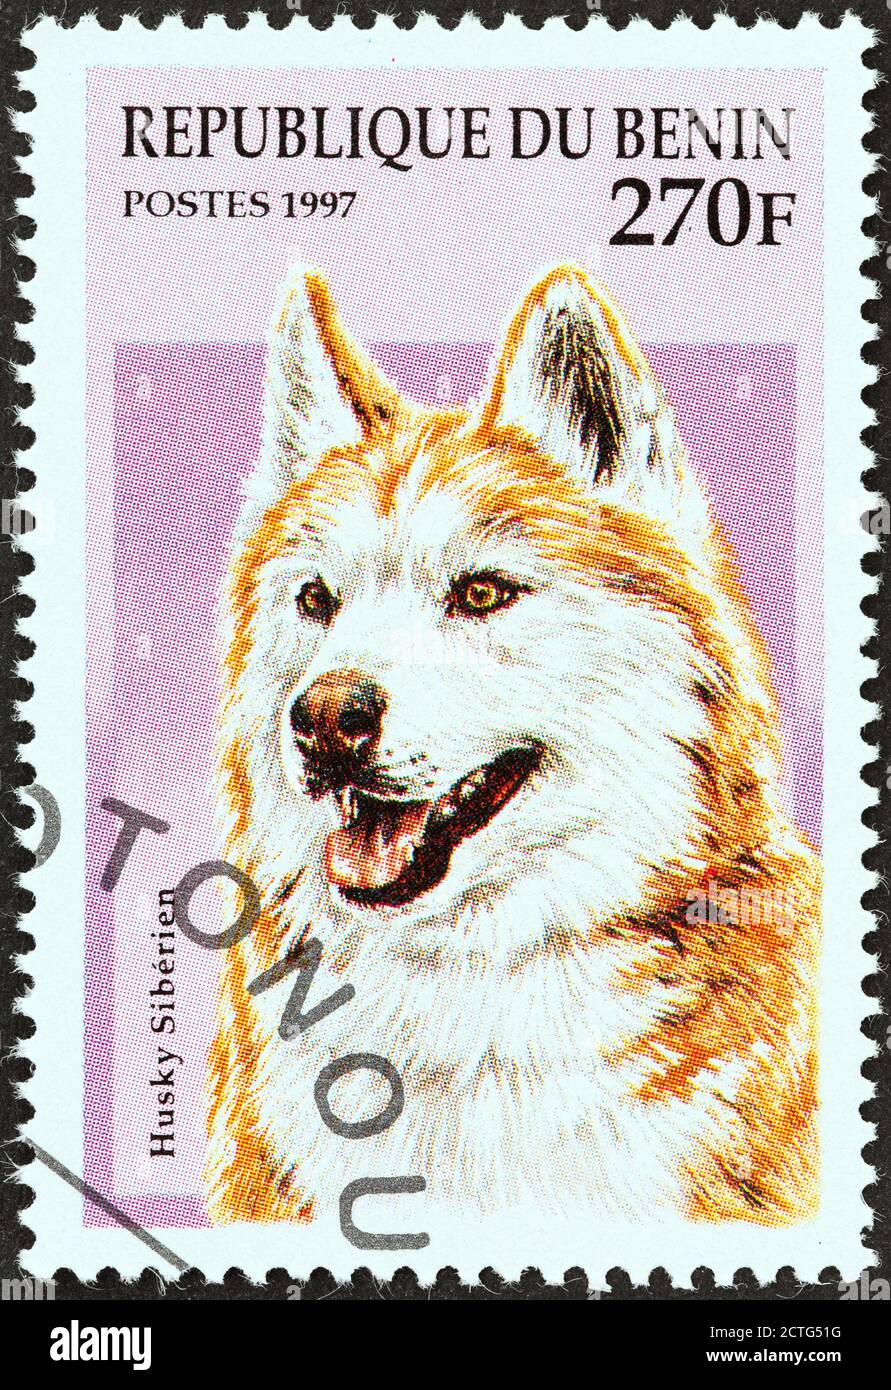 BENIN - UM 1997: Eine in Benin gedruckte Briefmarke aus der 'Dogs'-Ausgabe zeigt einen sibirischen Husky, um 1997. Stockfoto